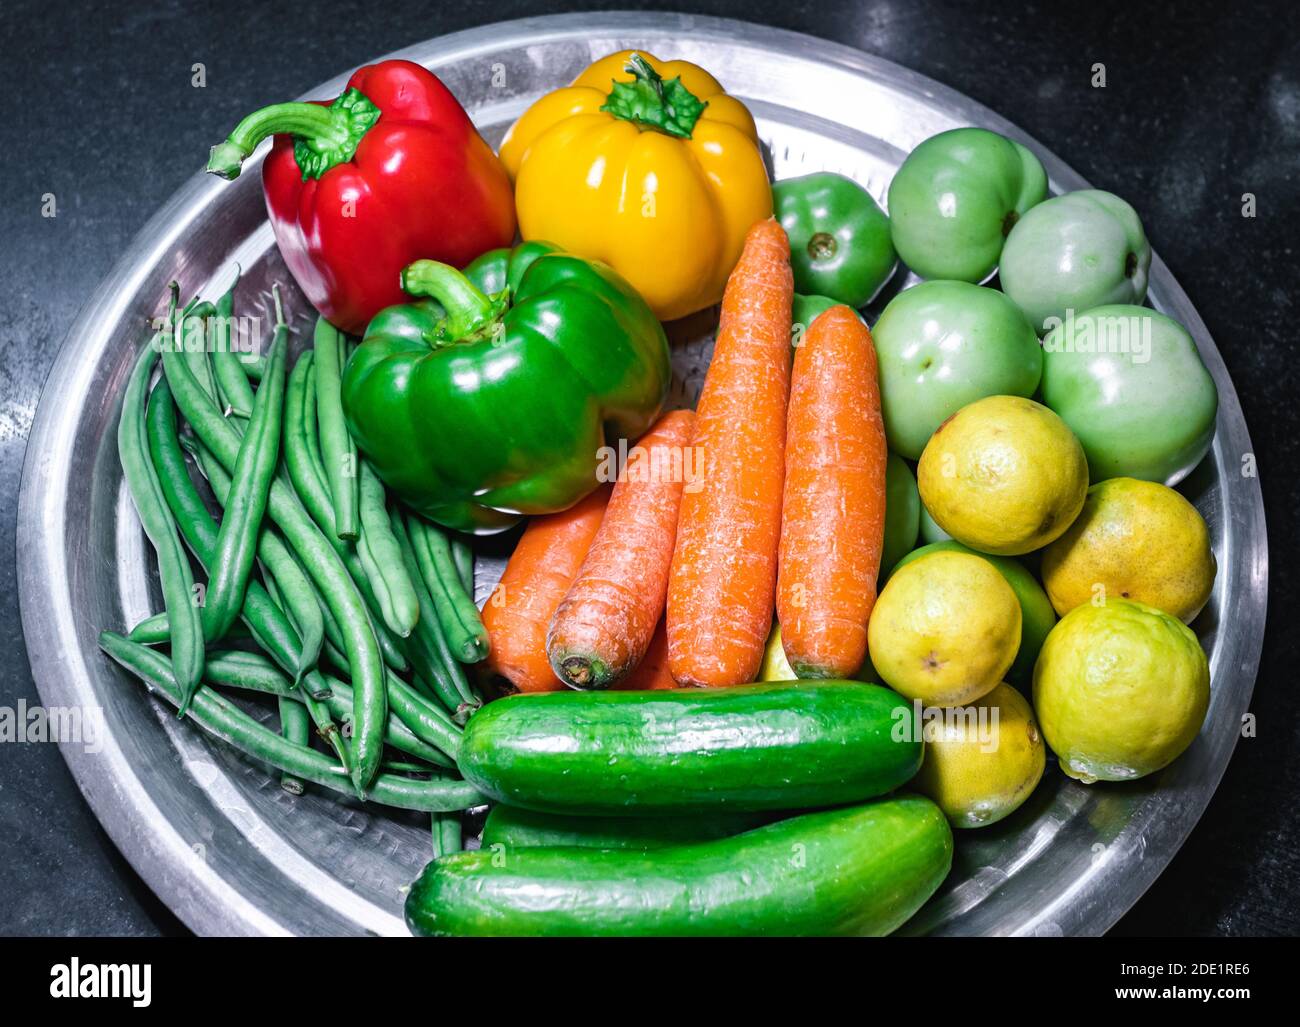 Verschiedene Gemüsesorten aus grünen Bohnen, roter Paprika, gelber Paprika, grüner Paprika, Karotten, Gurken, grünen Tomaten und Zitronen auf einem Teller Stockfoto